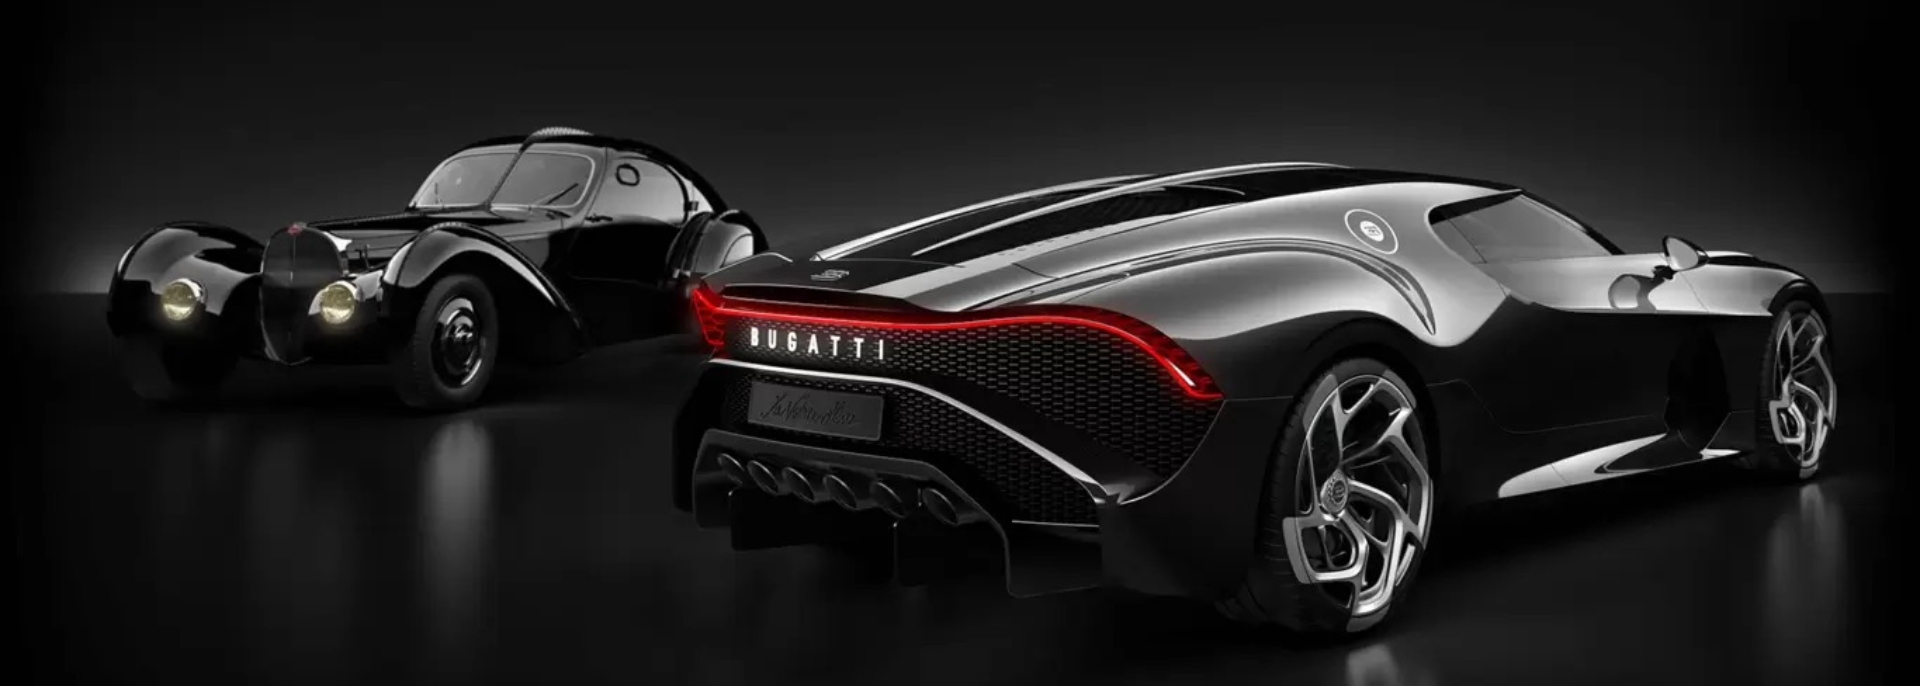 Este Bugatti es el auto más caro del mundo: ¿Cuánto cuesta?